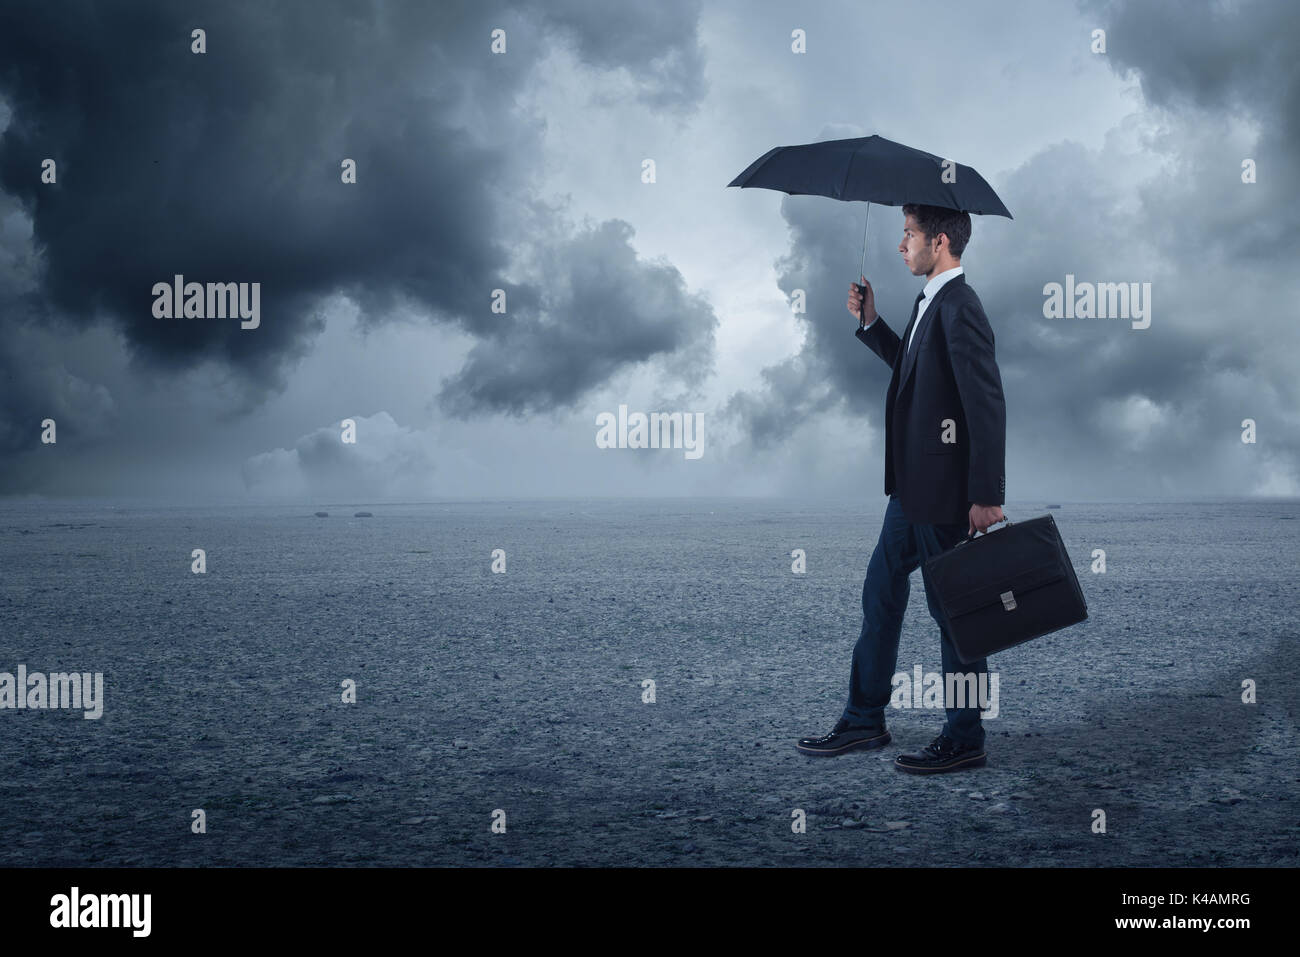 Businessman with umbrella debout à l'arrière-plan nuageux Banque D'Images